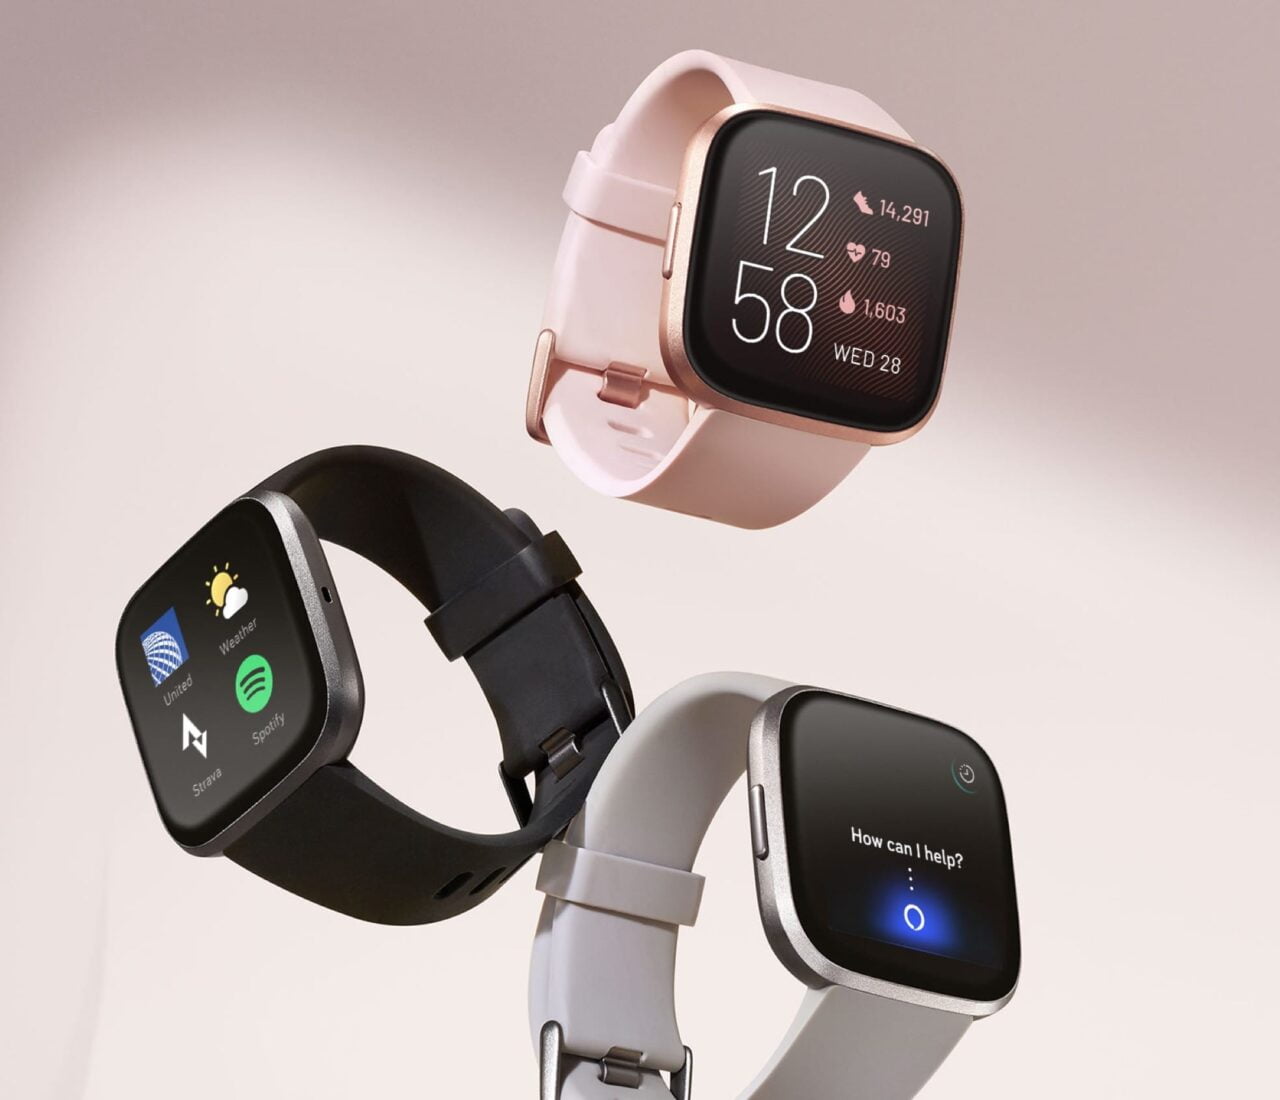 Trzy inteligentne zegarki z różnymi paskami i wyświetlaczami, pokazujące różne funkcje i aplikacje.